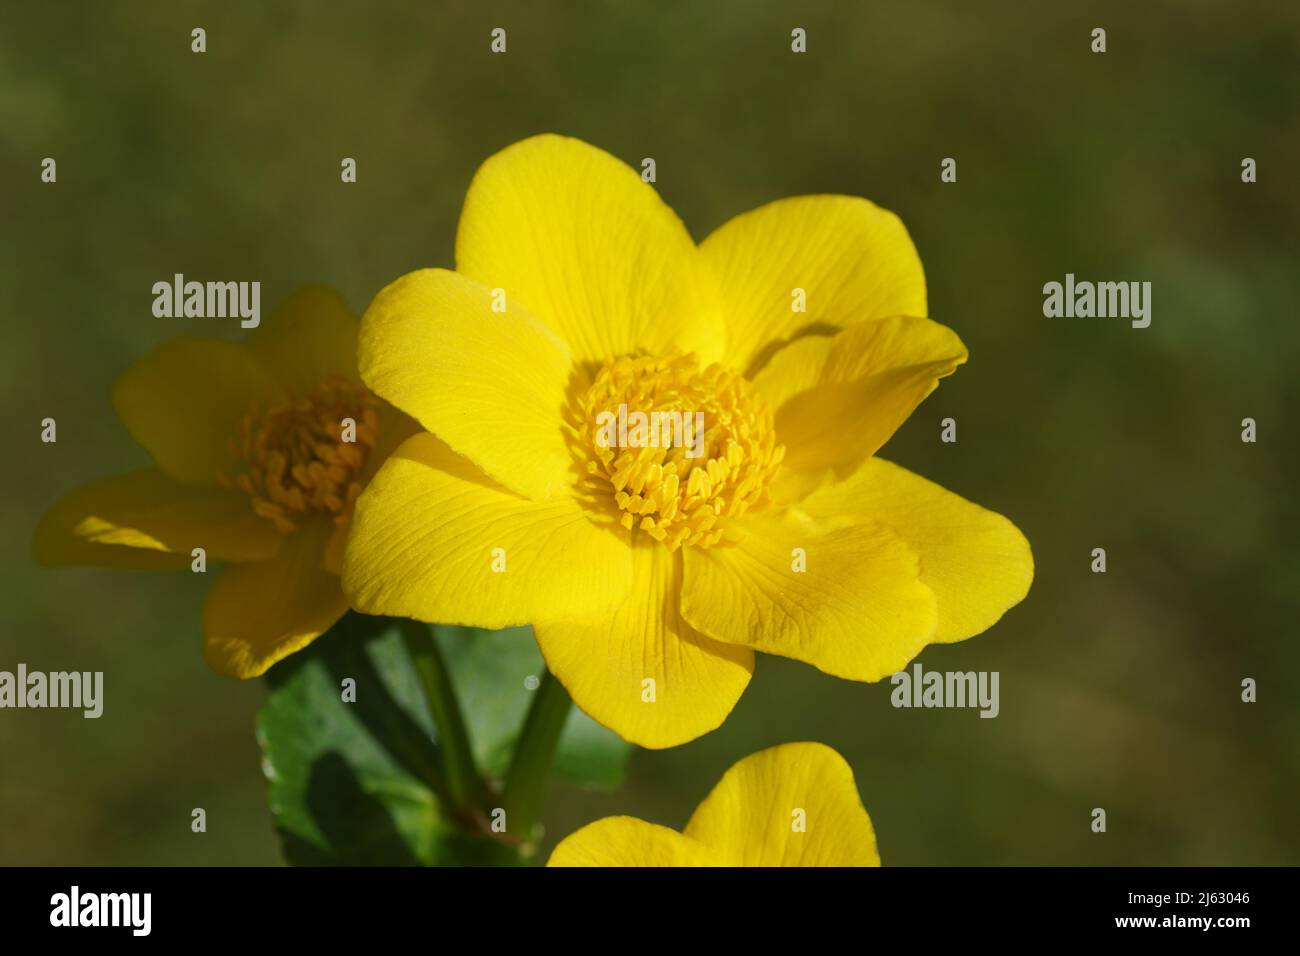 Nahaufnahme der gelben Blume der Sumpfmarmeltier- oder Königspatel (Caltha palustris) der Familie der Butterblume (Ranunculaceae). Verschwommener dunkelgrüner Garten Stockfoto